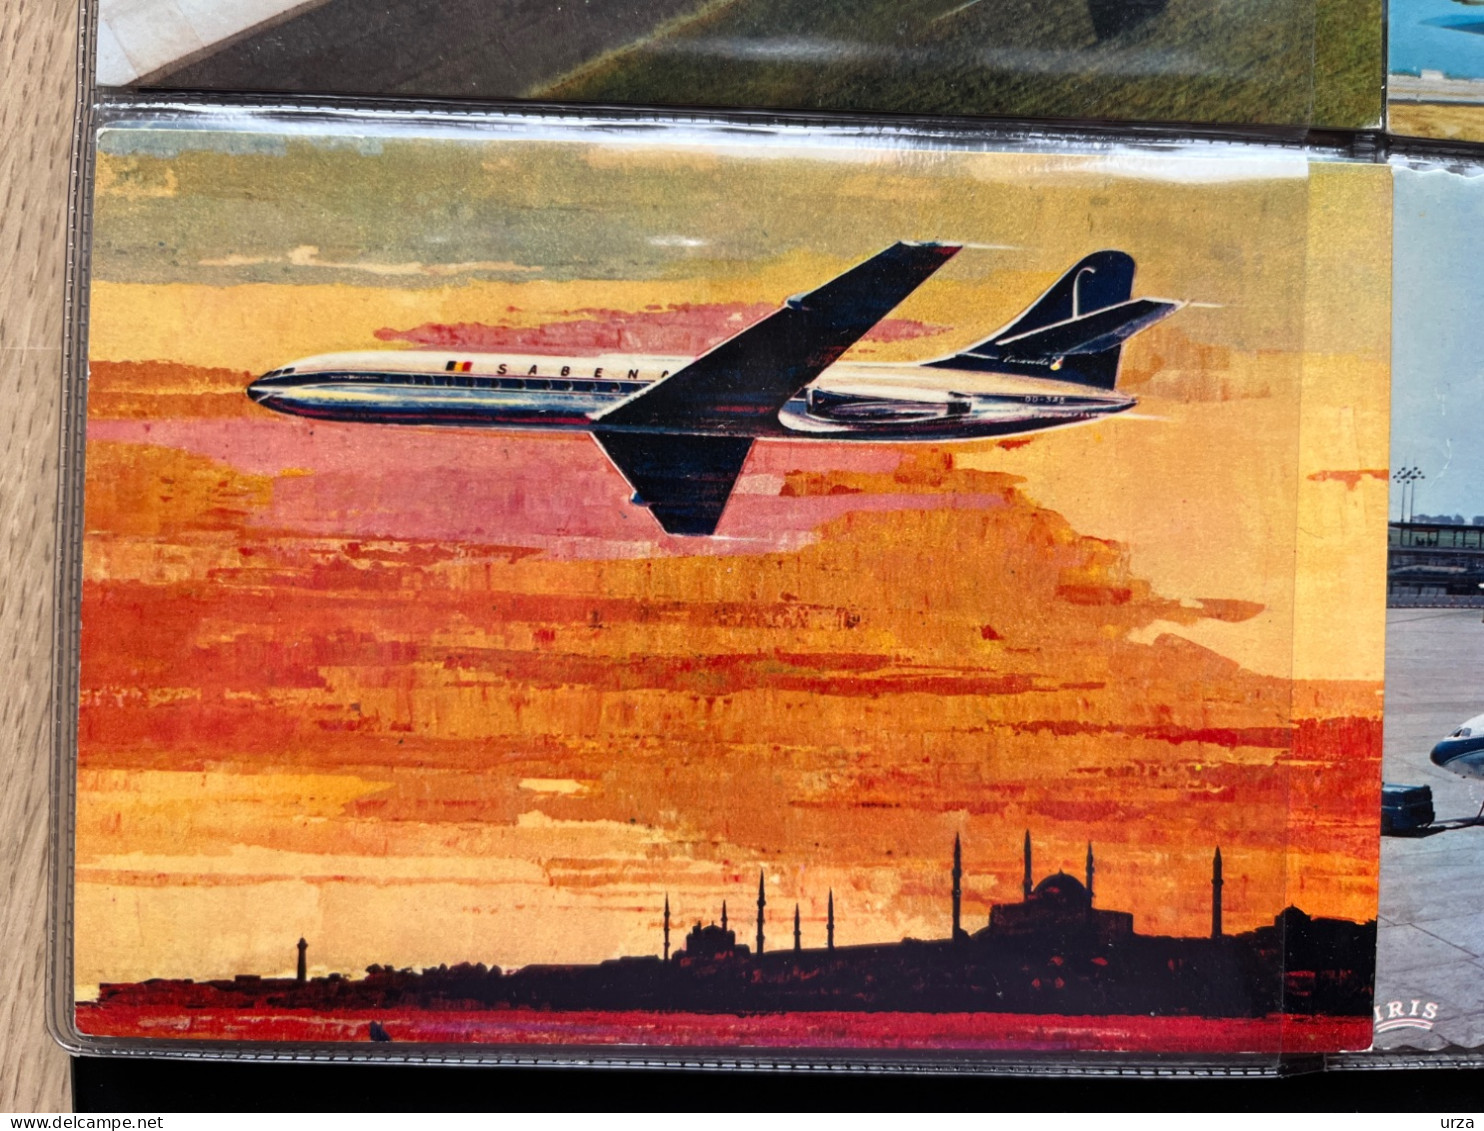 SABENA@rare pochette propagande aéronautique@+ collection de cartes.